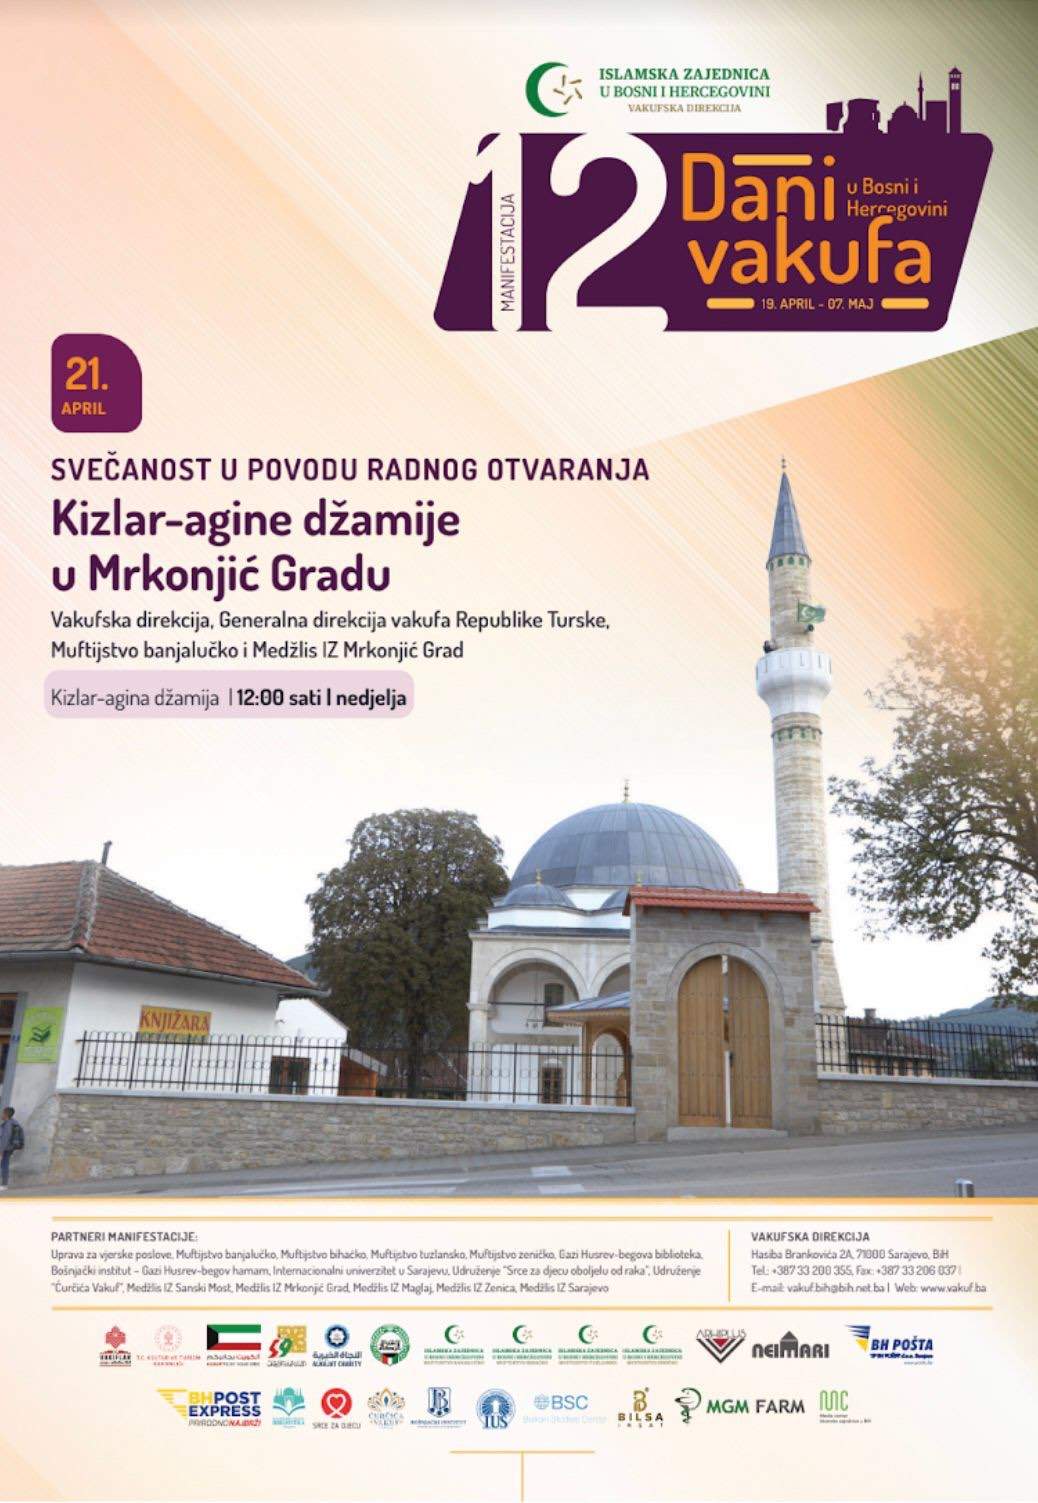 Plakat.jpg - Nakon 31 godinu od paljenja, miniranja i rušenja sutra svečano otvaranje Kizlar-agine džamije u Mrkonjić Gradu